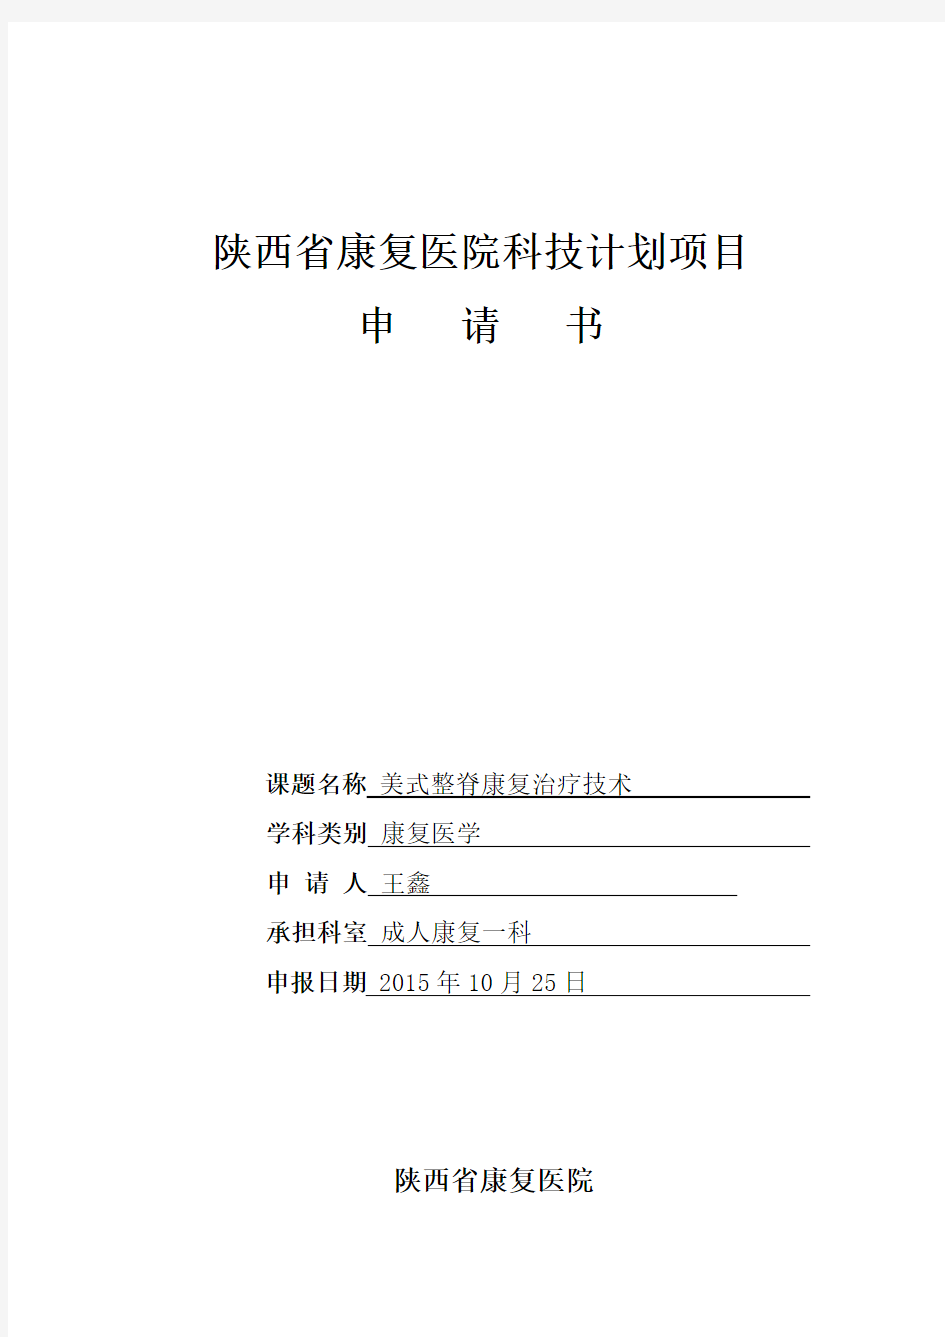 美式整脊技术科技项目申请书(王鑫)